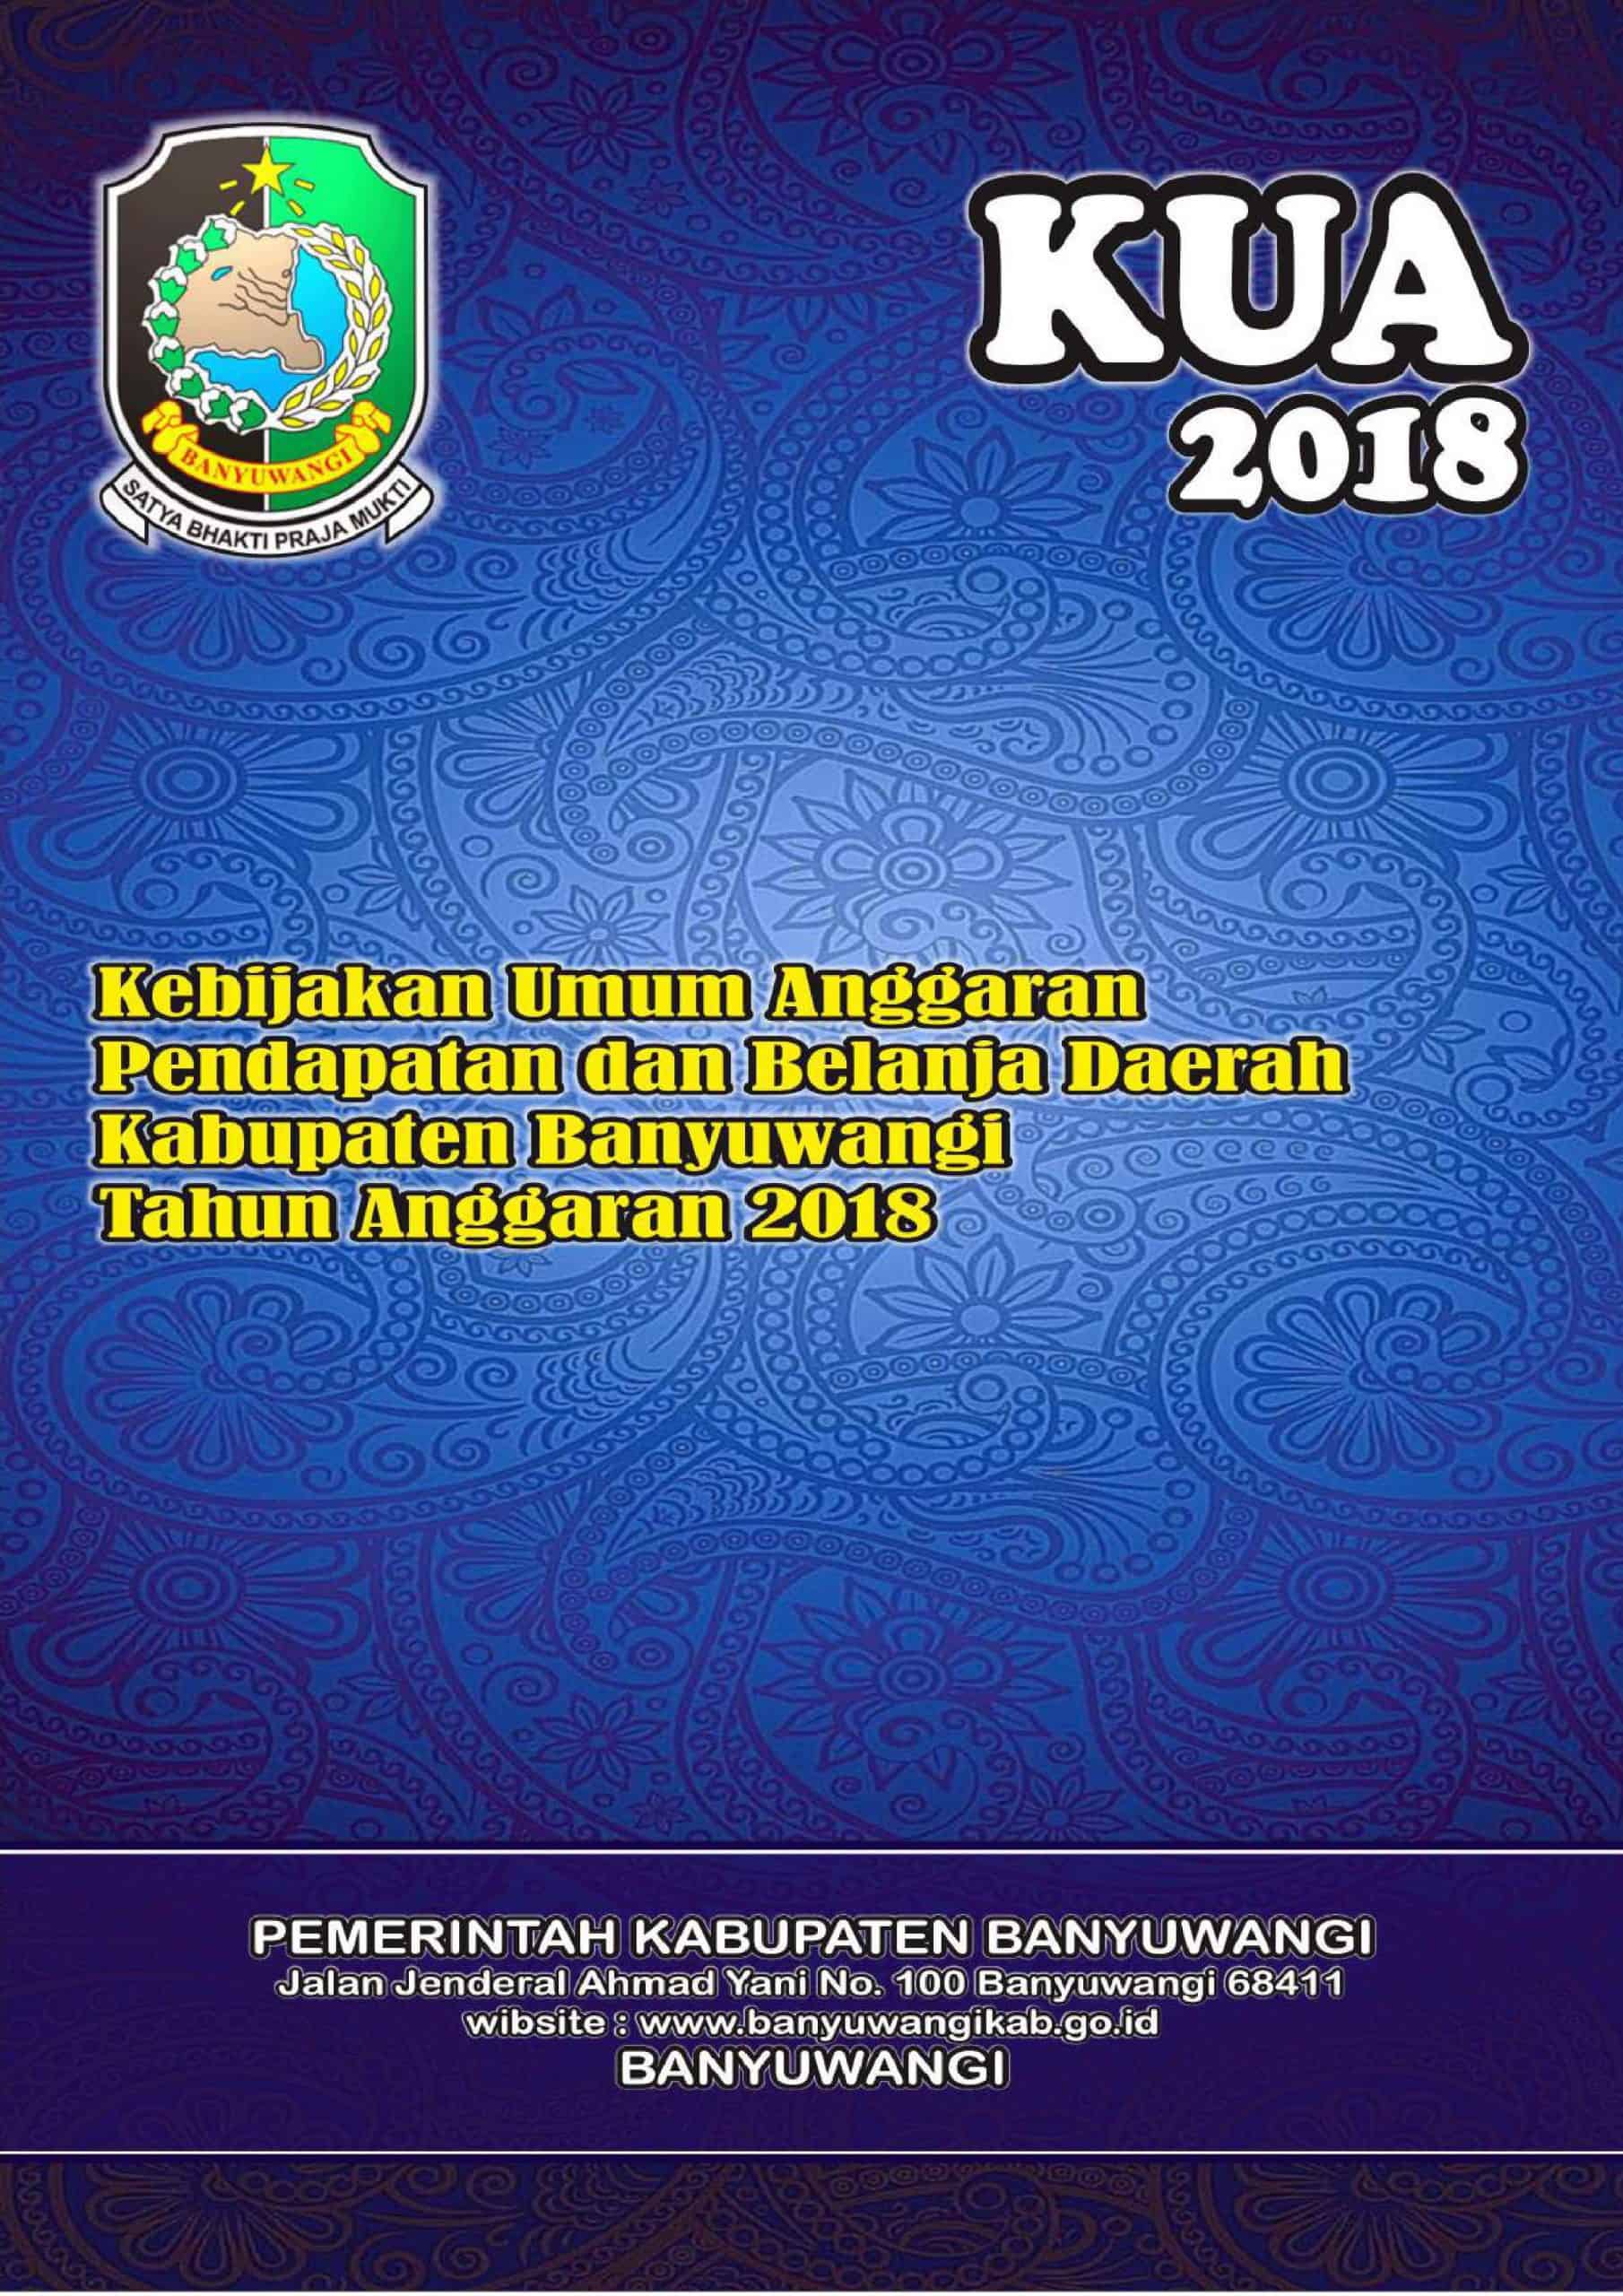 Kebijakan_Umum_Anggaran_Pendapatan_dan_Belanja_Daerah_Kabupaten_Banyuwangi_Tahun_Anggaran_2018